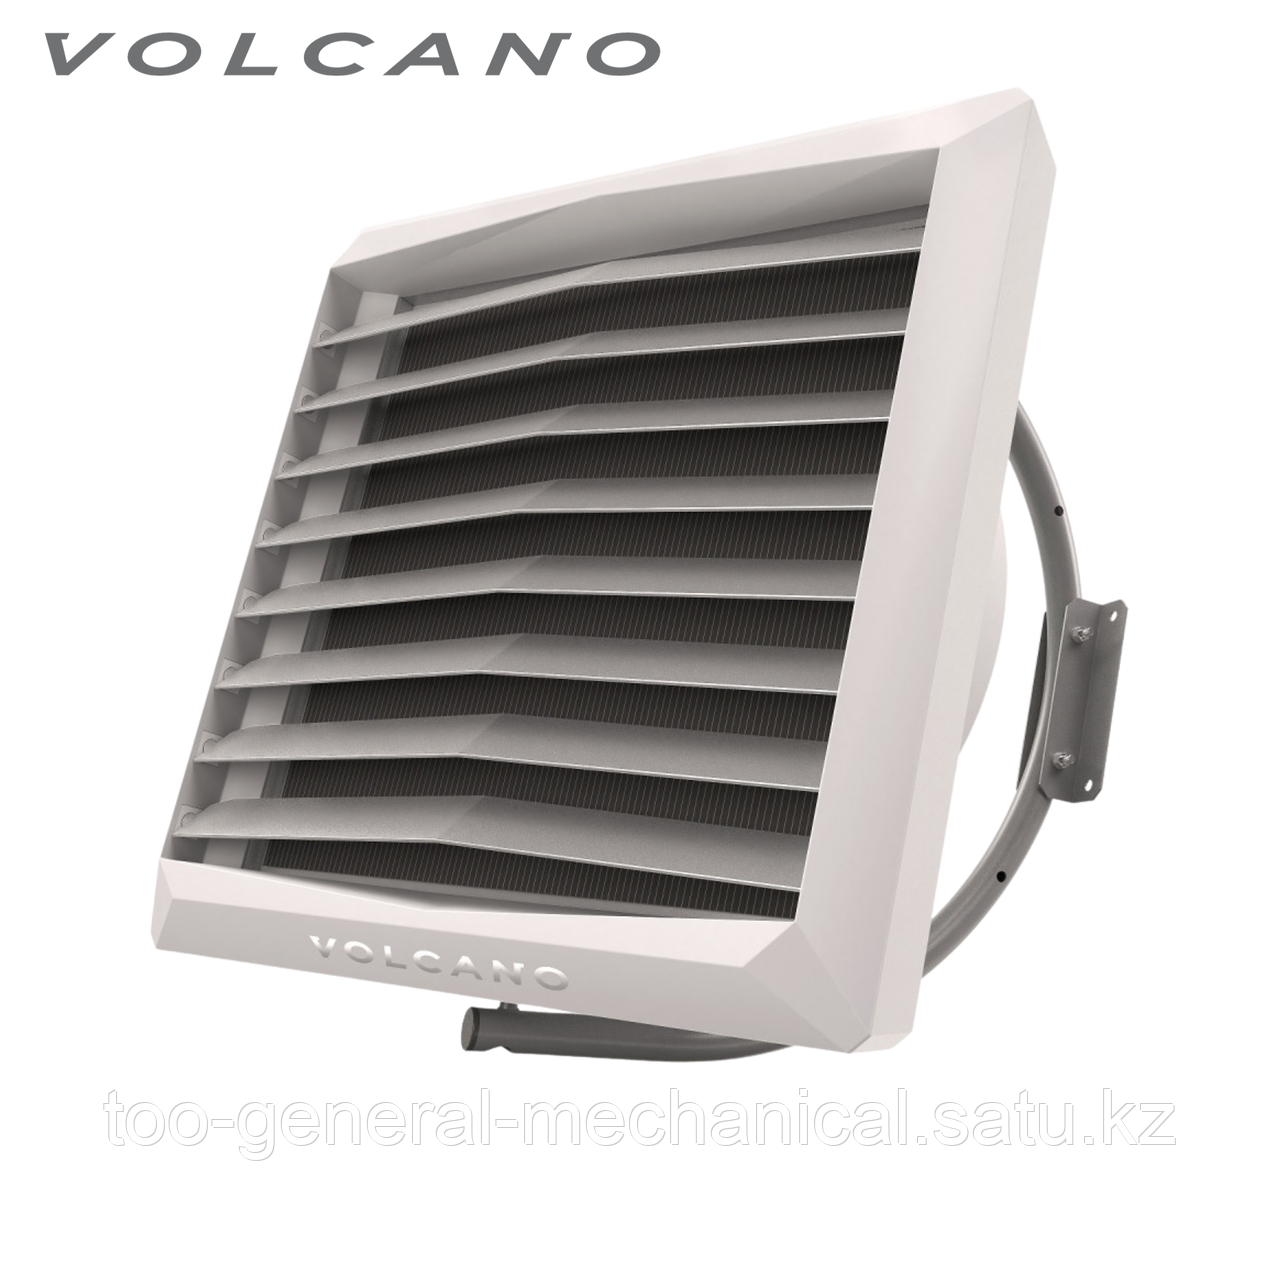 Тепловентилятор Volcano VR1 AC. Воздушно-отопительный агрегат Volcano VR1 AC. Тепловентилятор Вулкан ВР1